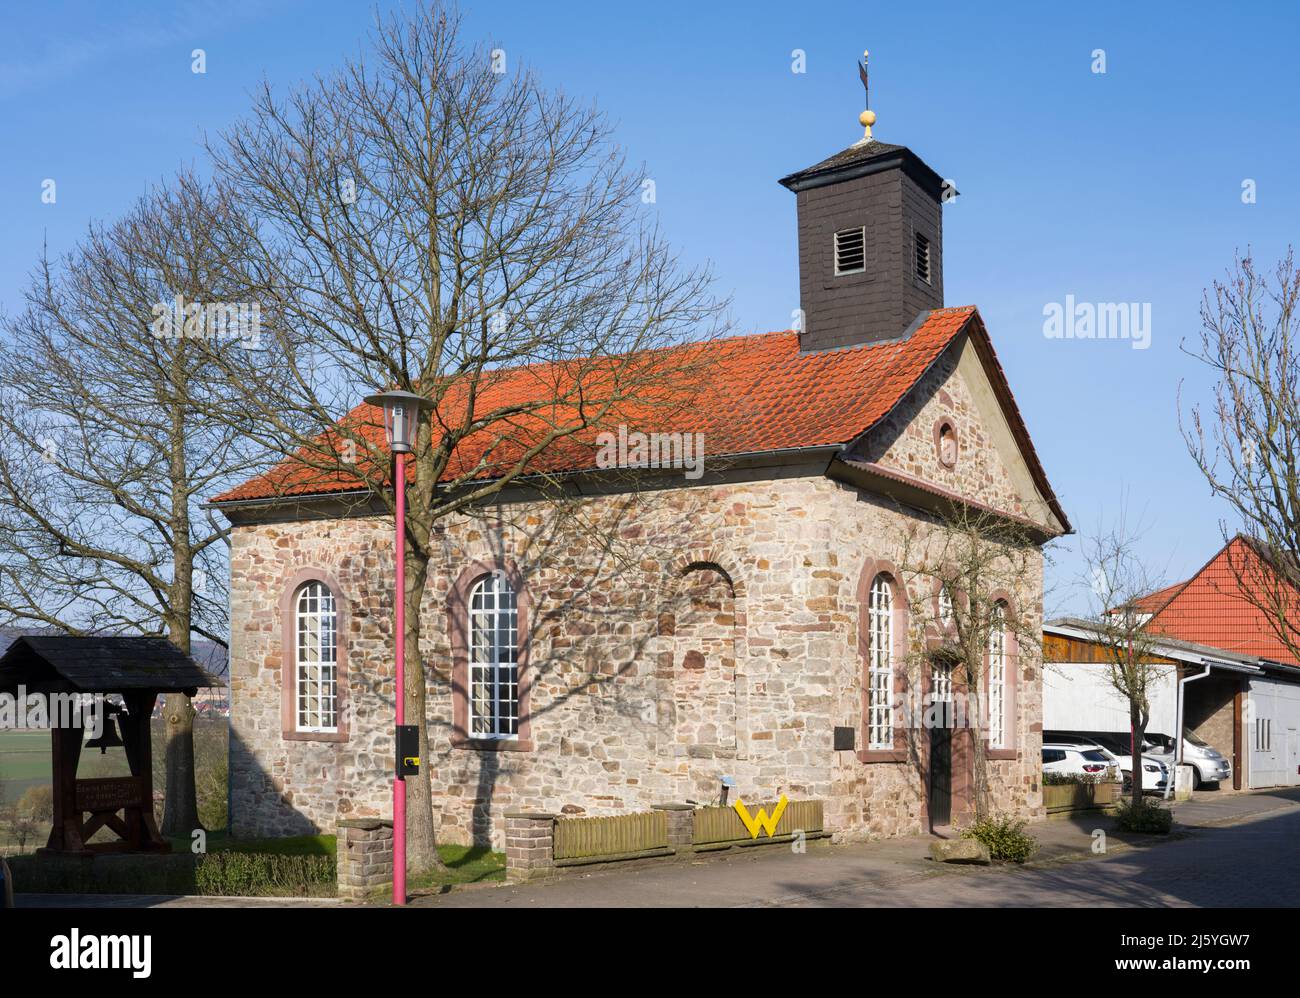 Waldensian edificio chiesa, 18 ° secolo, villaggio di Gewissensenruh, Wesertal, Weserbergland, Assia, Germania Foto Stock